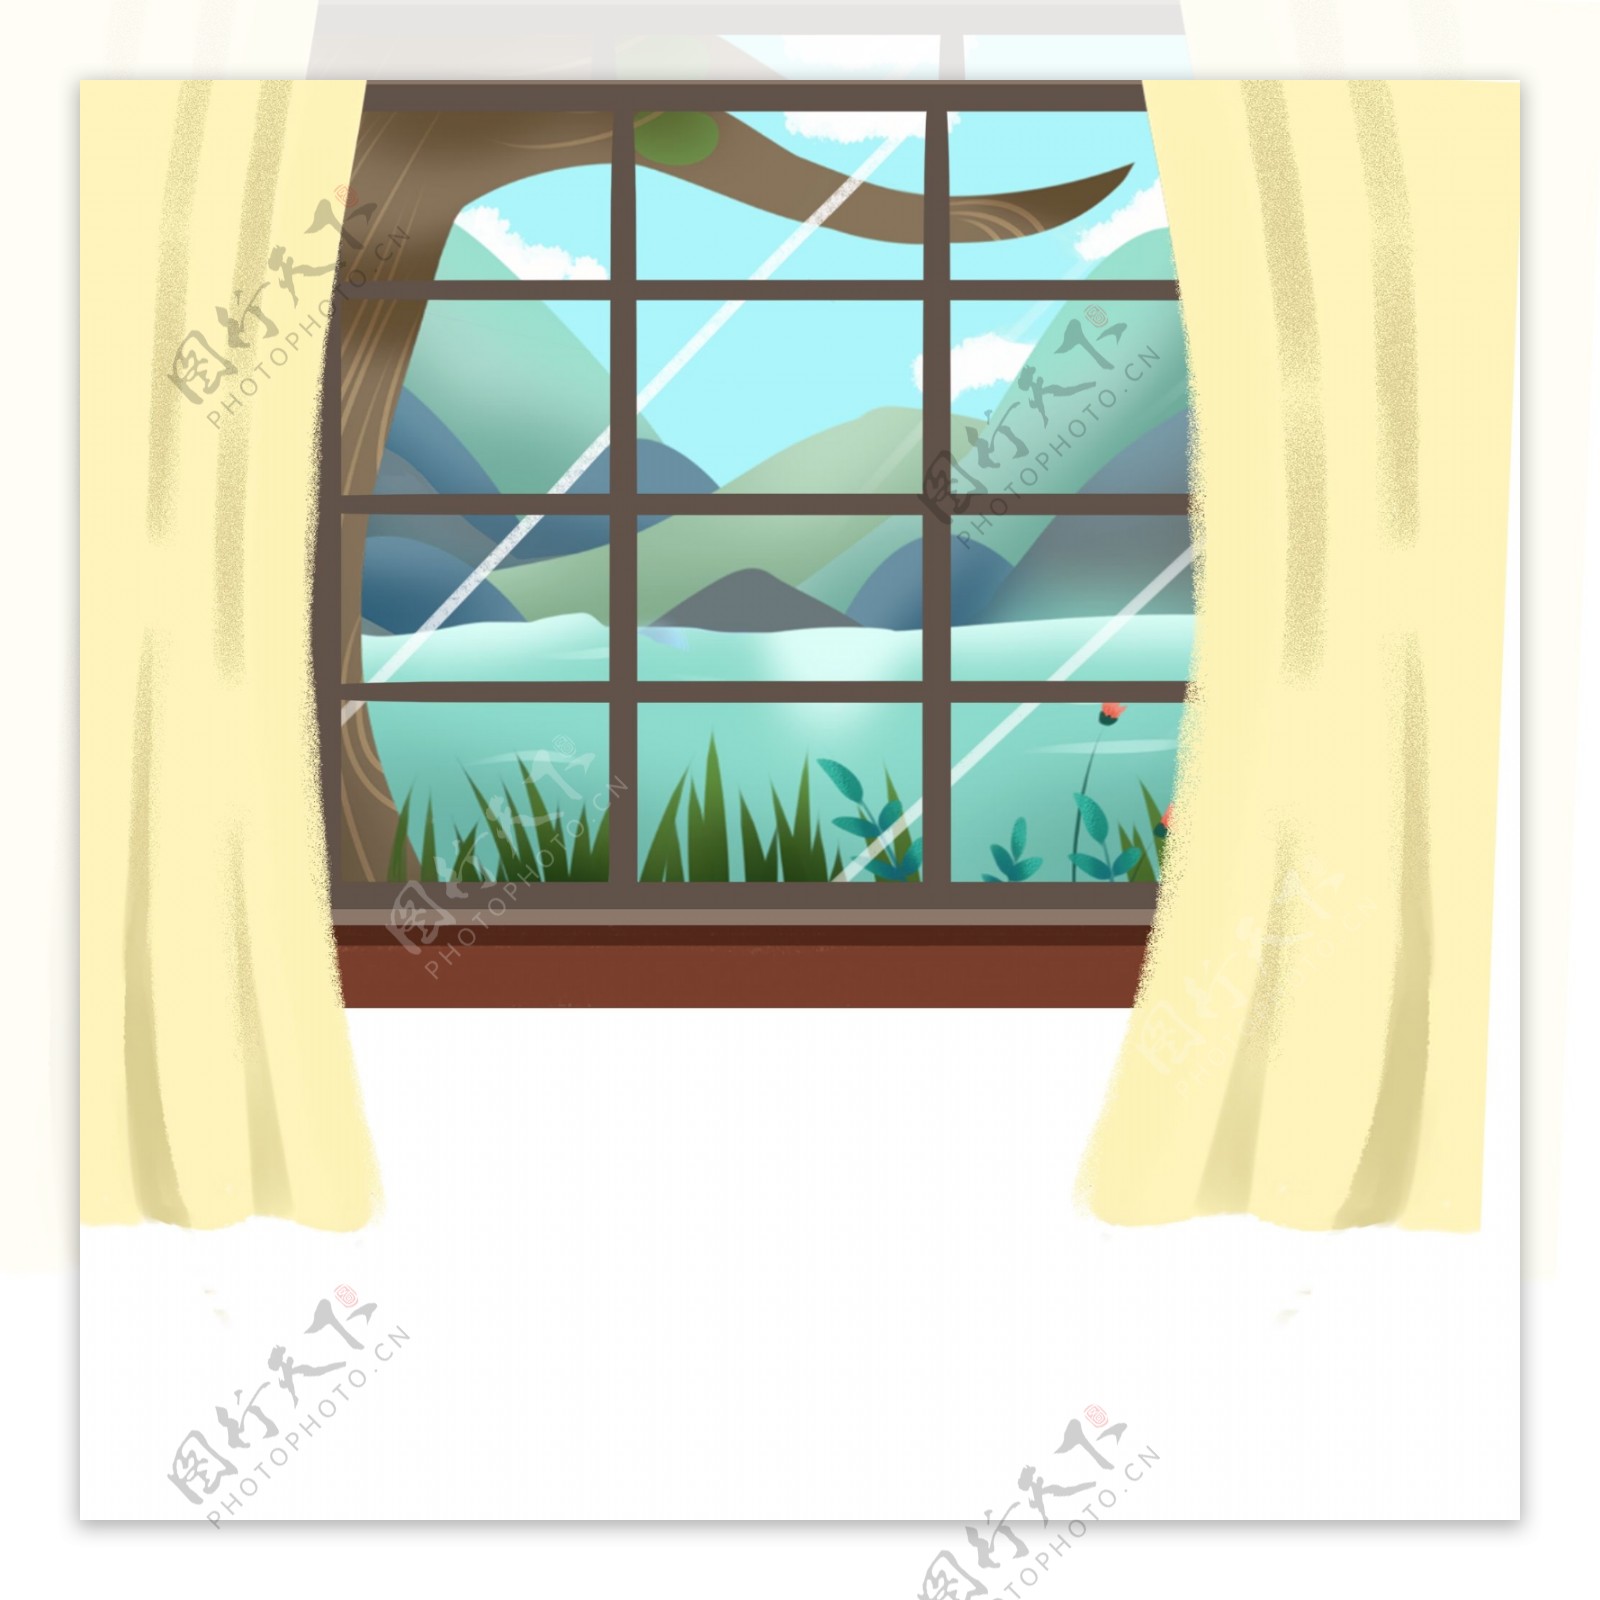 室内窗子风景插画